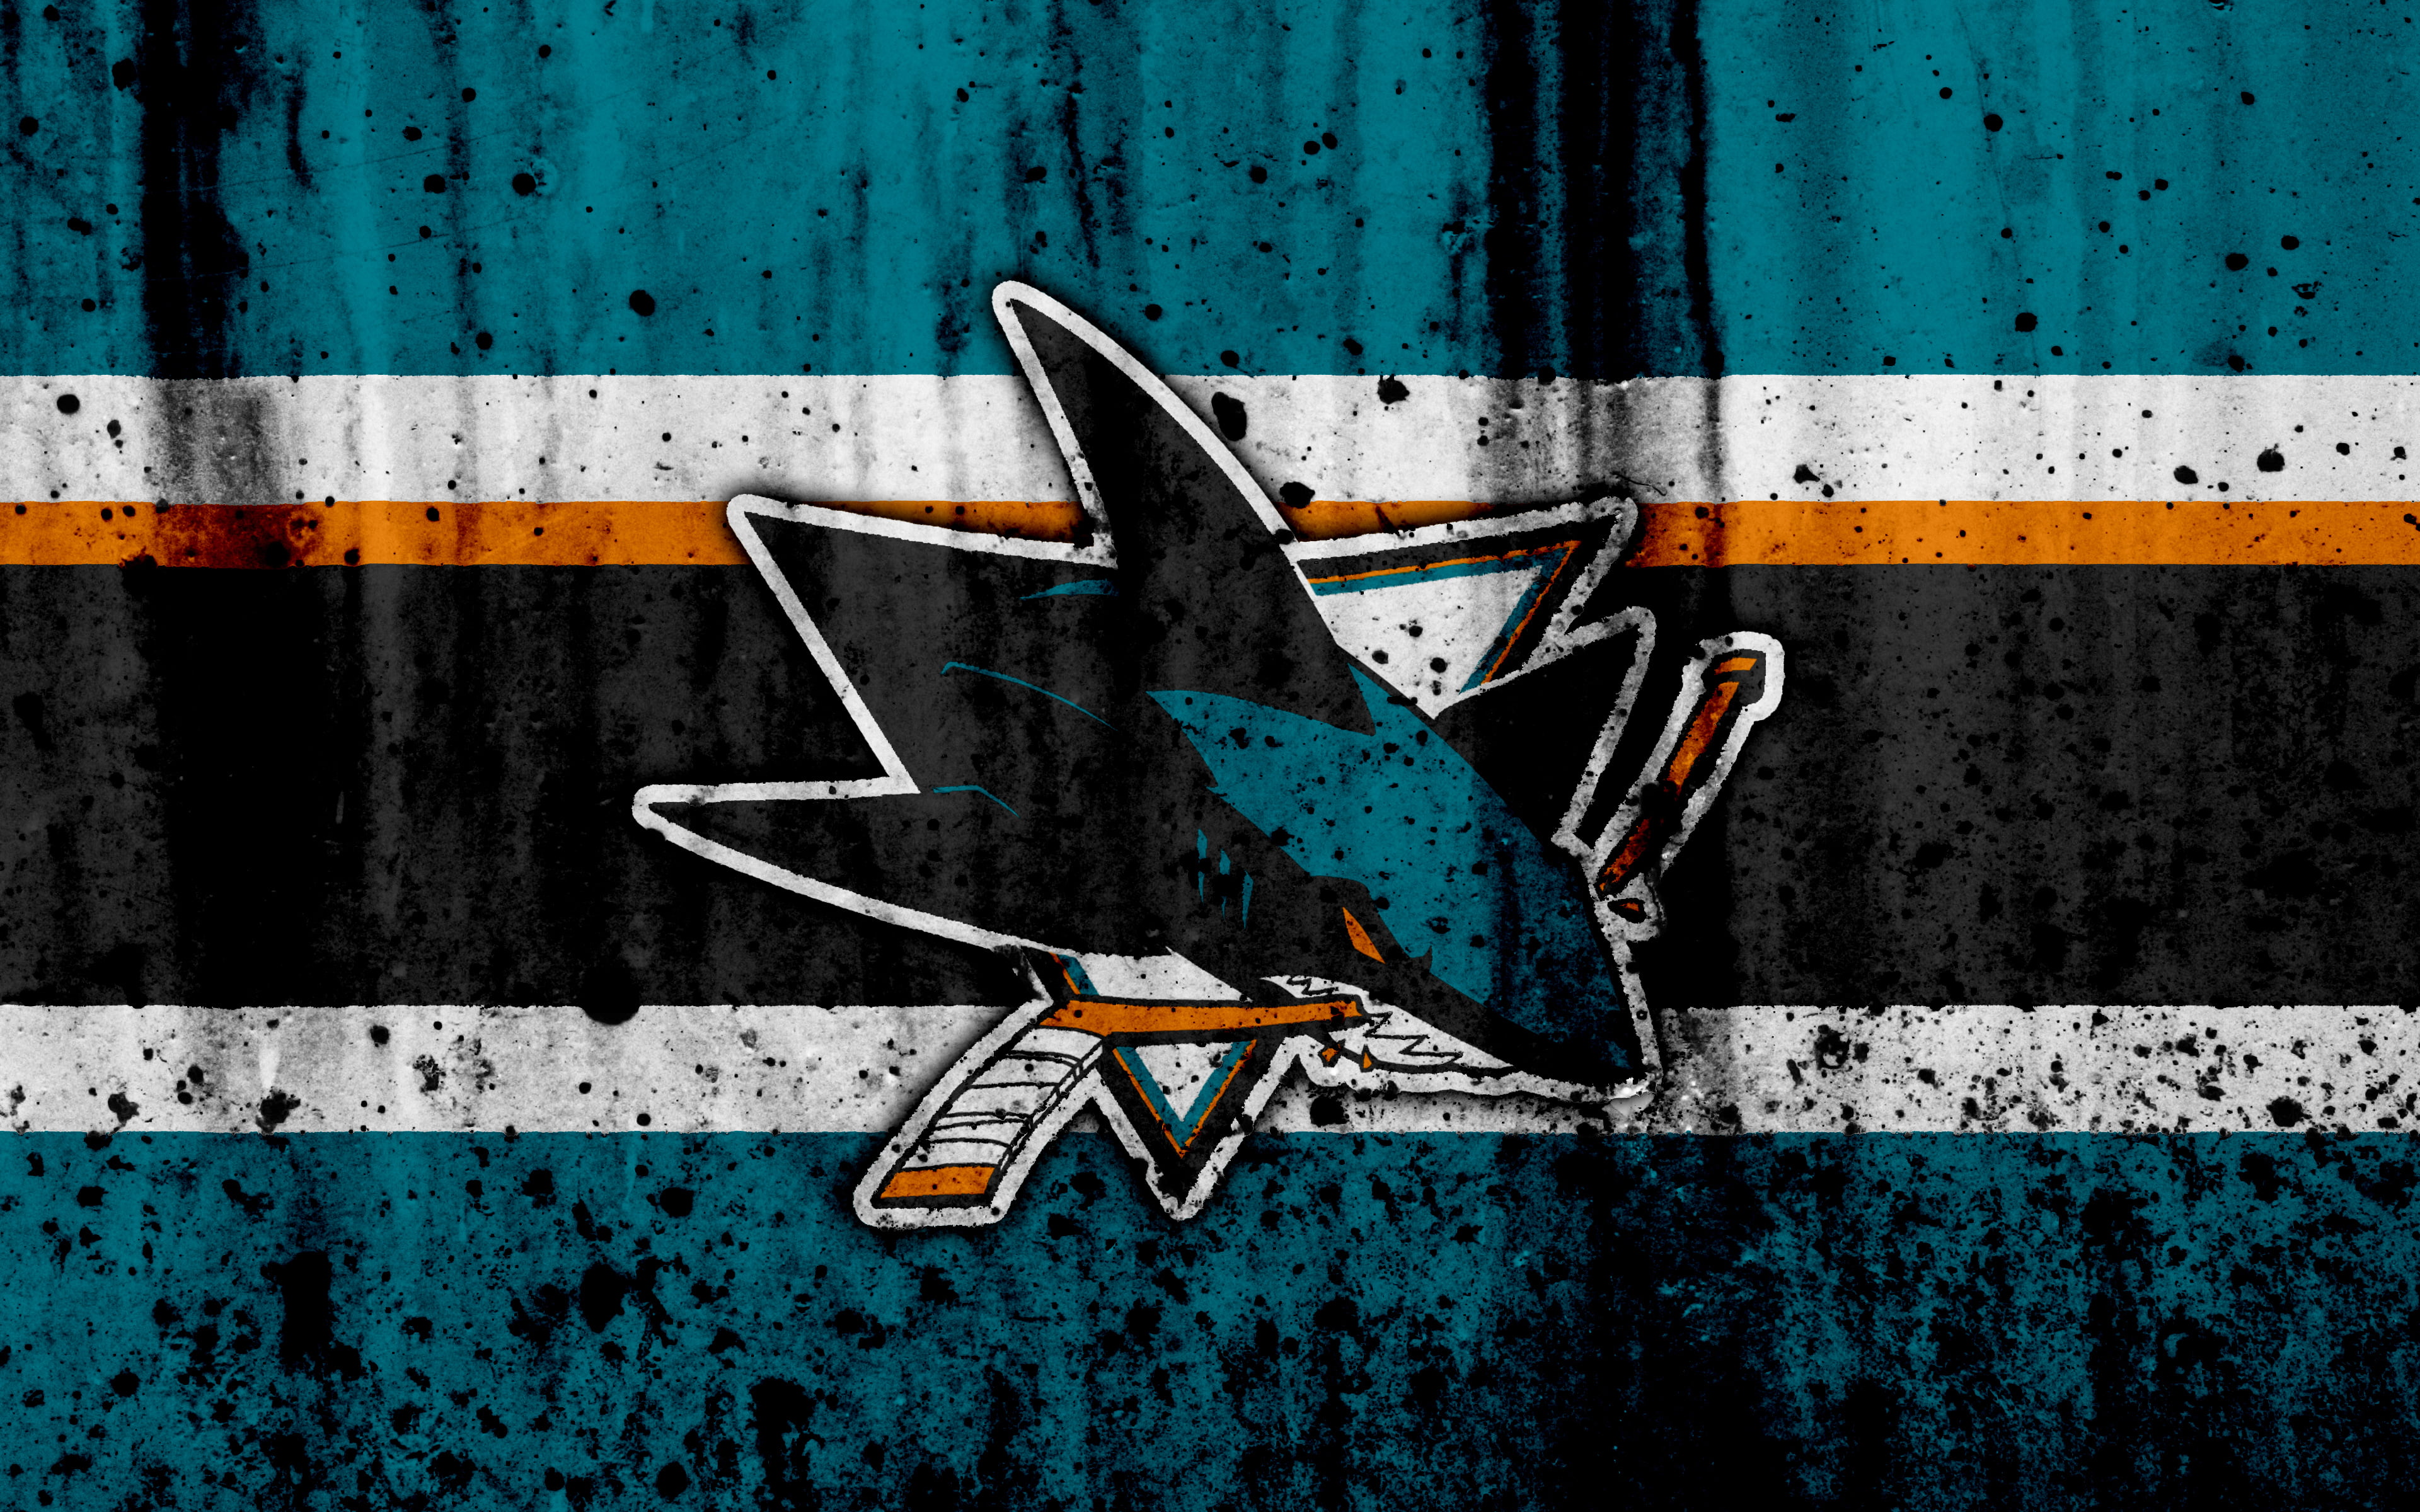 Hockey, San Jose Sharks, Emblem, Logo, NHL